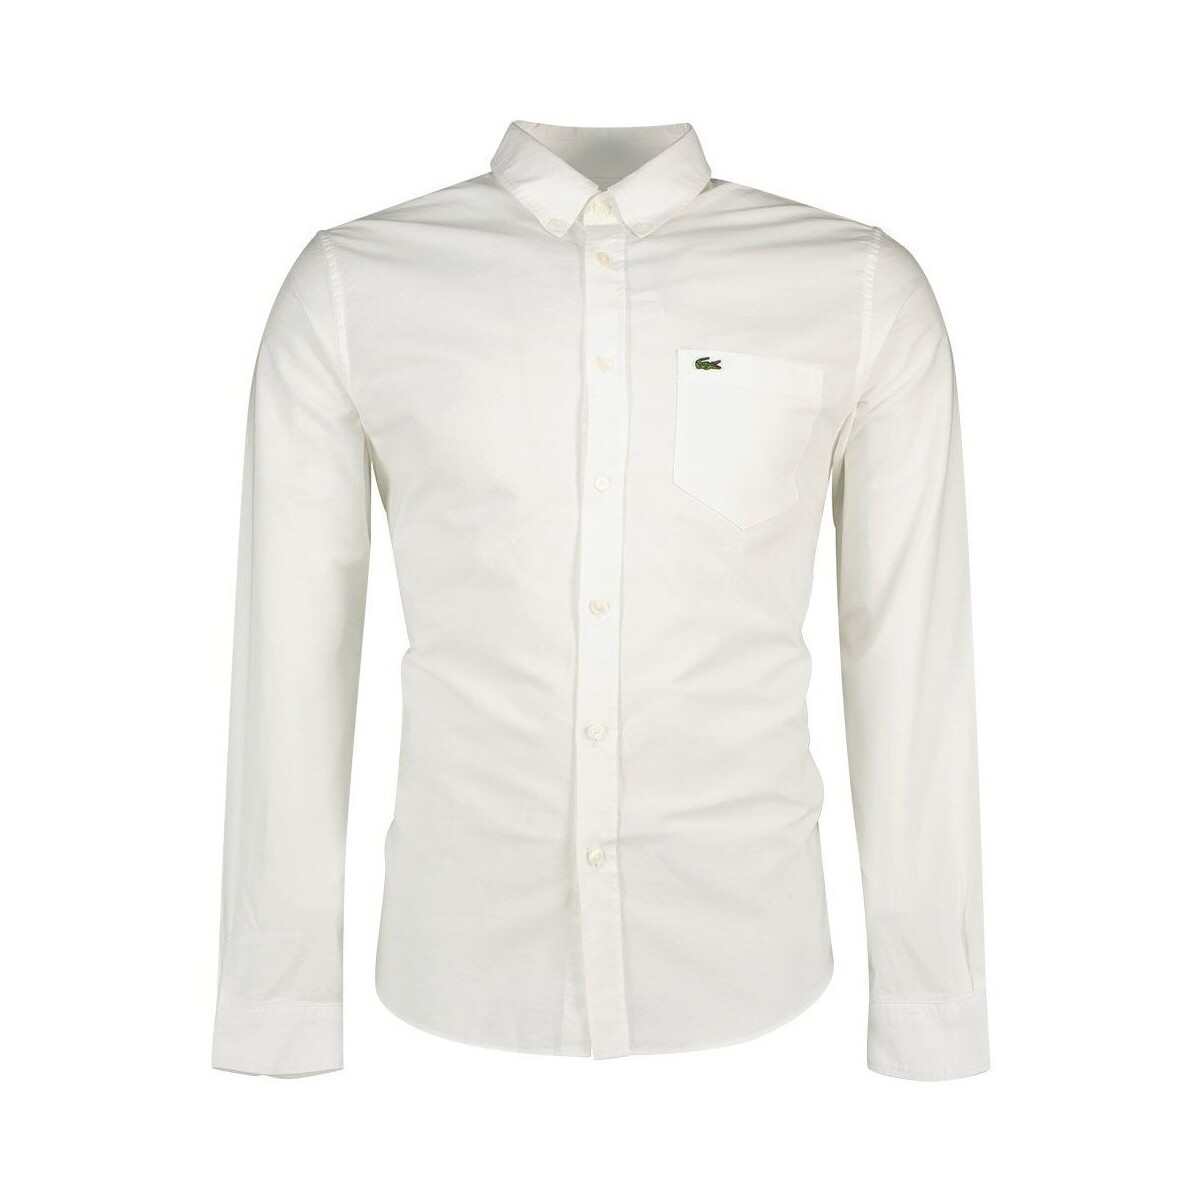 Abbigliamento Uomo Camicie maniche lunghe Lacoste CH0204 Bianco